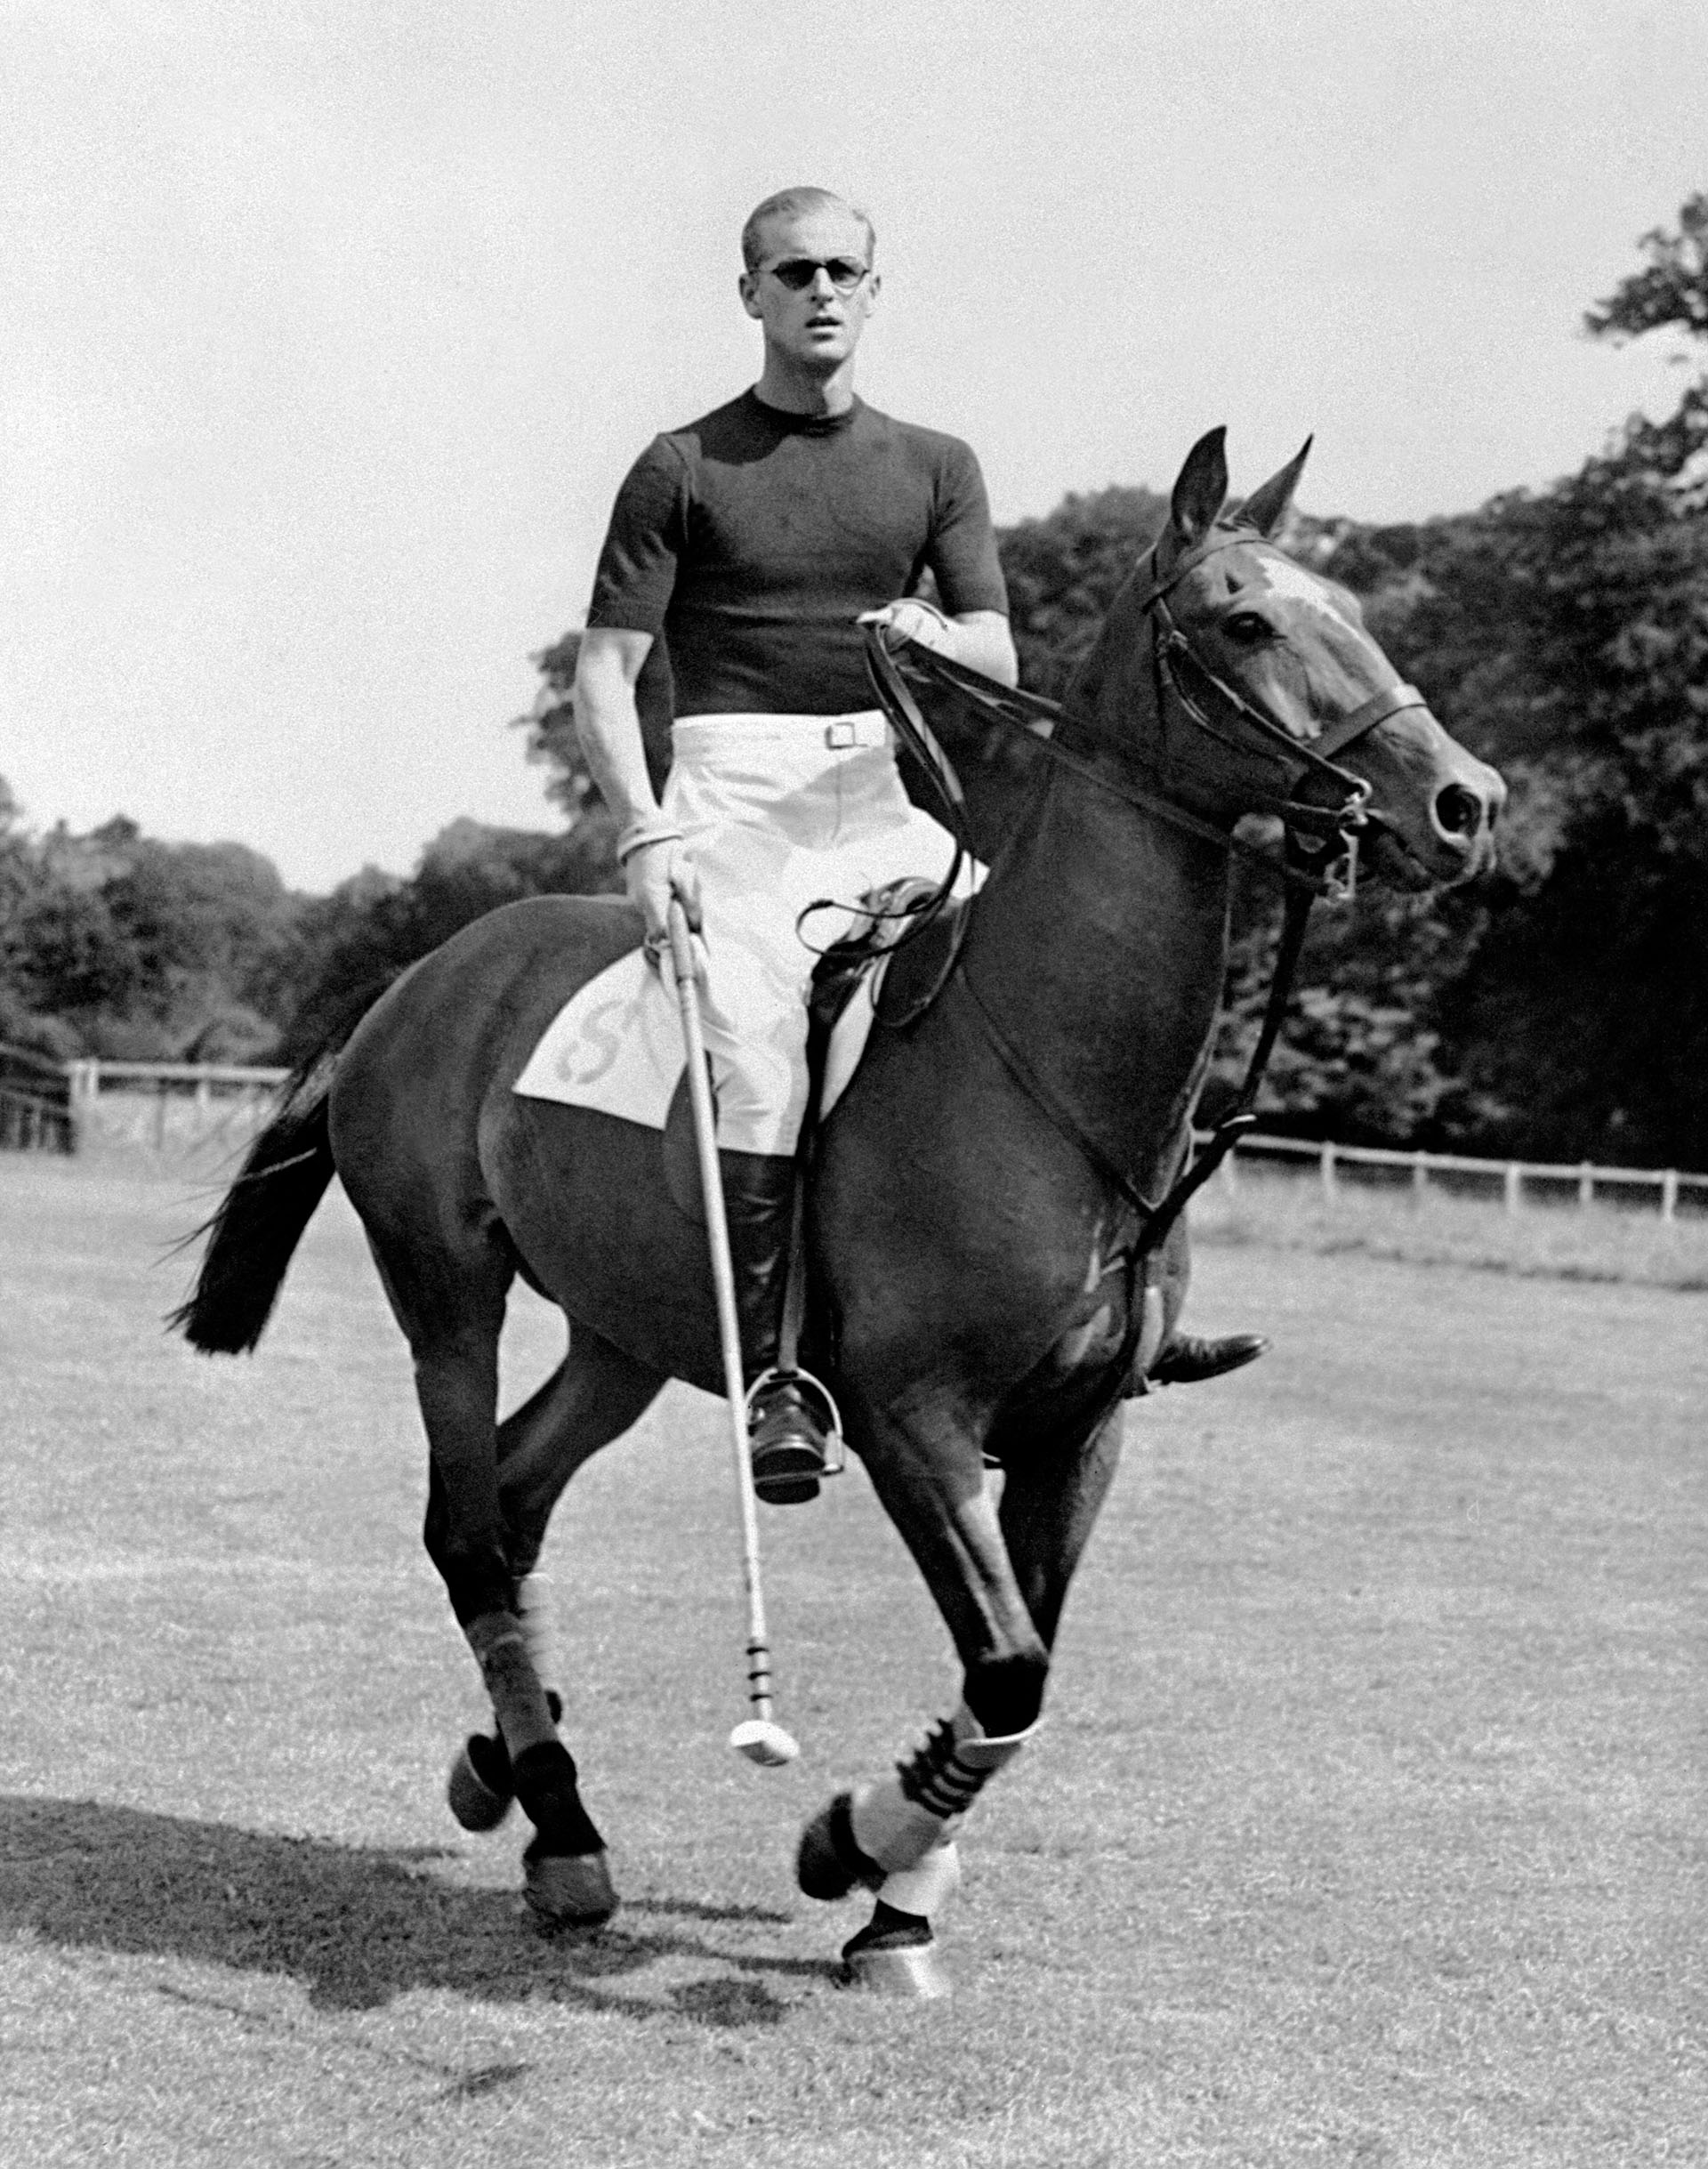 7 de agosto de 1950, el príncipe Felipe de Gran Bretaña, duque de Edimburgo, de permiso en Inglaterra, juega al polo, unos días antes del nacimiento de su segundo hijo